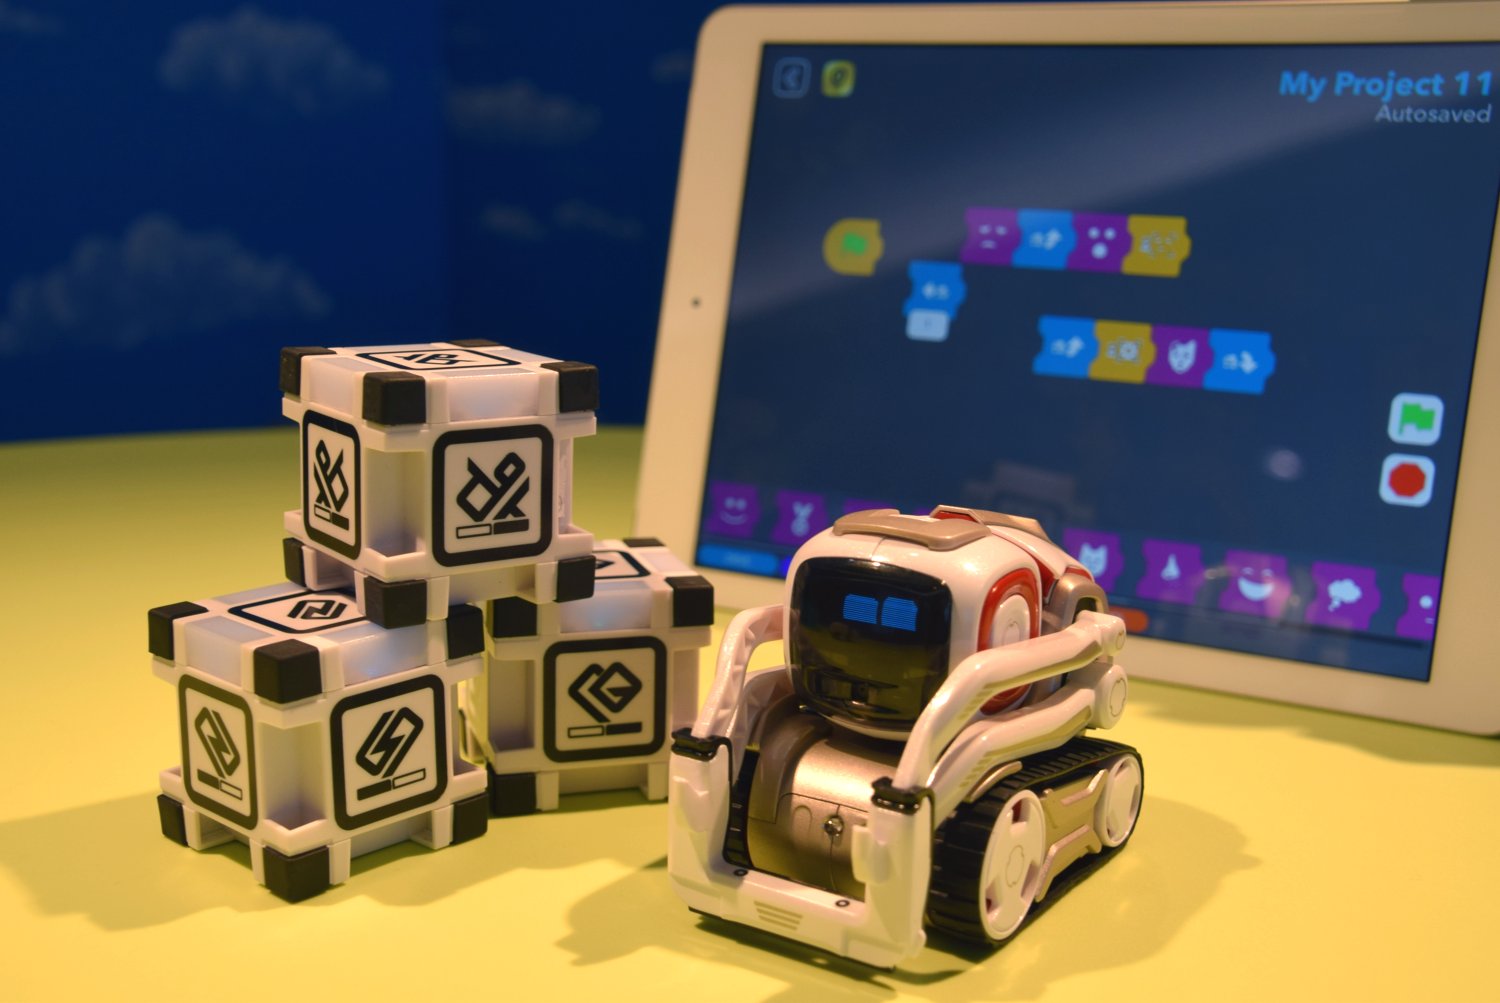 AI搭載でここまでかわいい。手のひらロボット『COZMO』がロボット玩具の概念を変える - Engadget 日本版